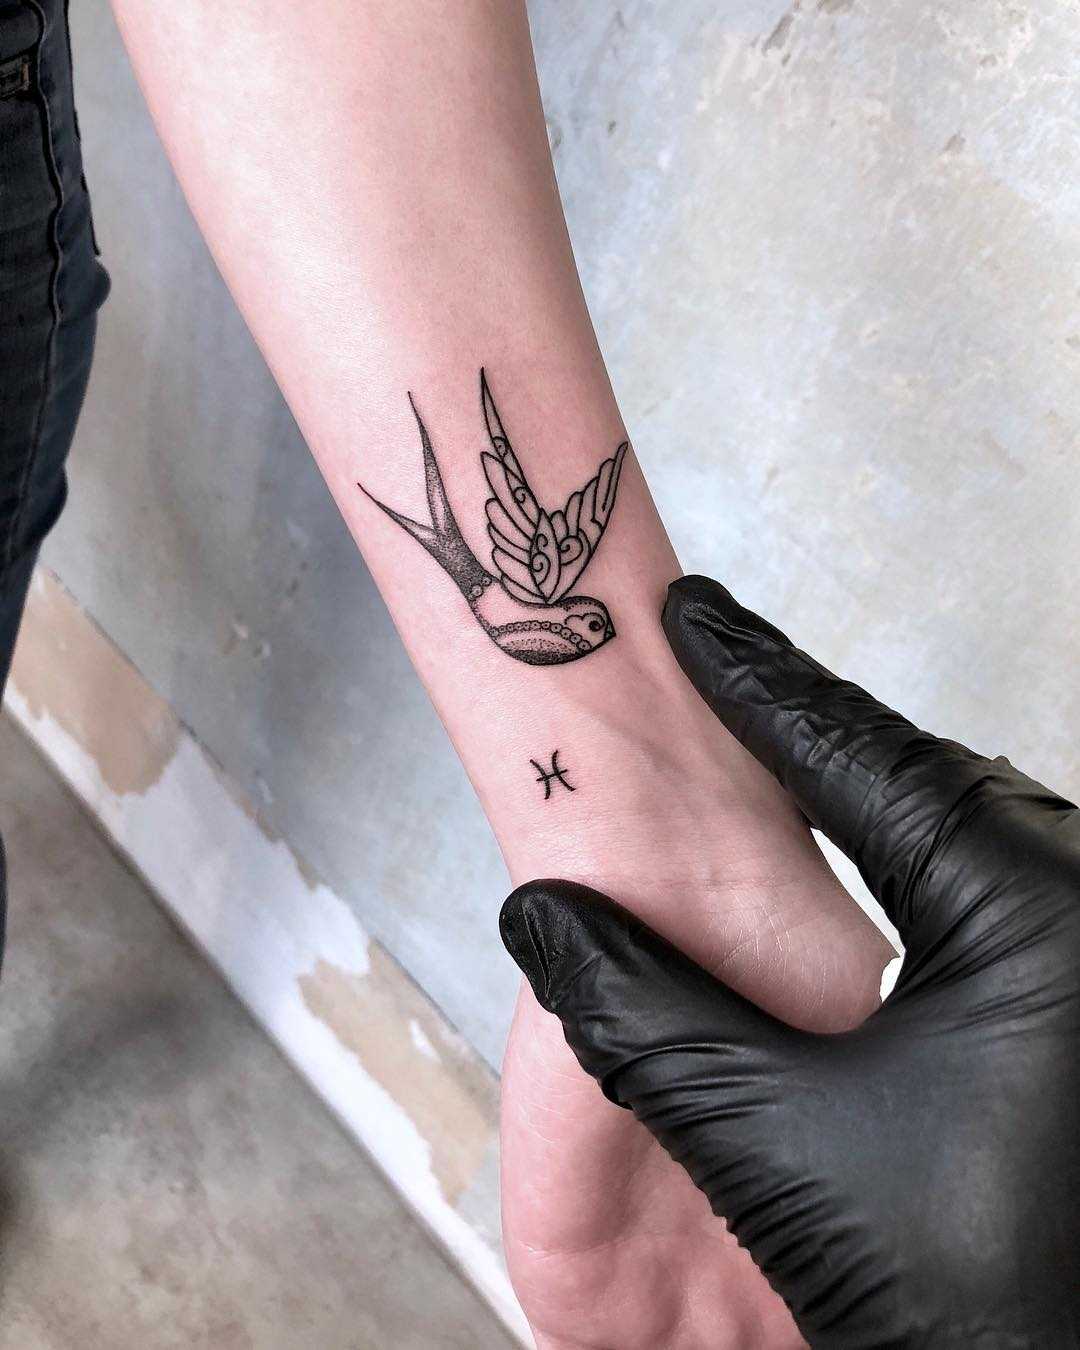 Swallow and tiny Zodiac sign tattoo